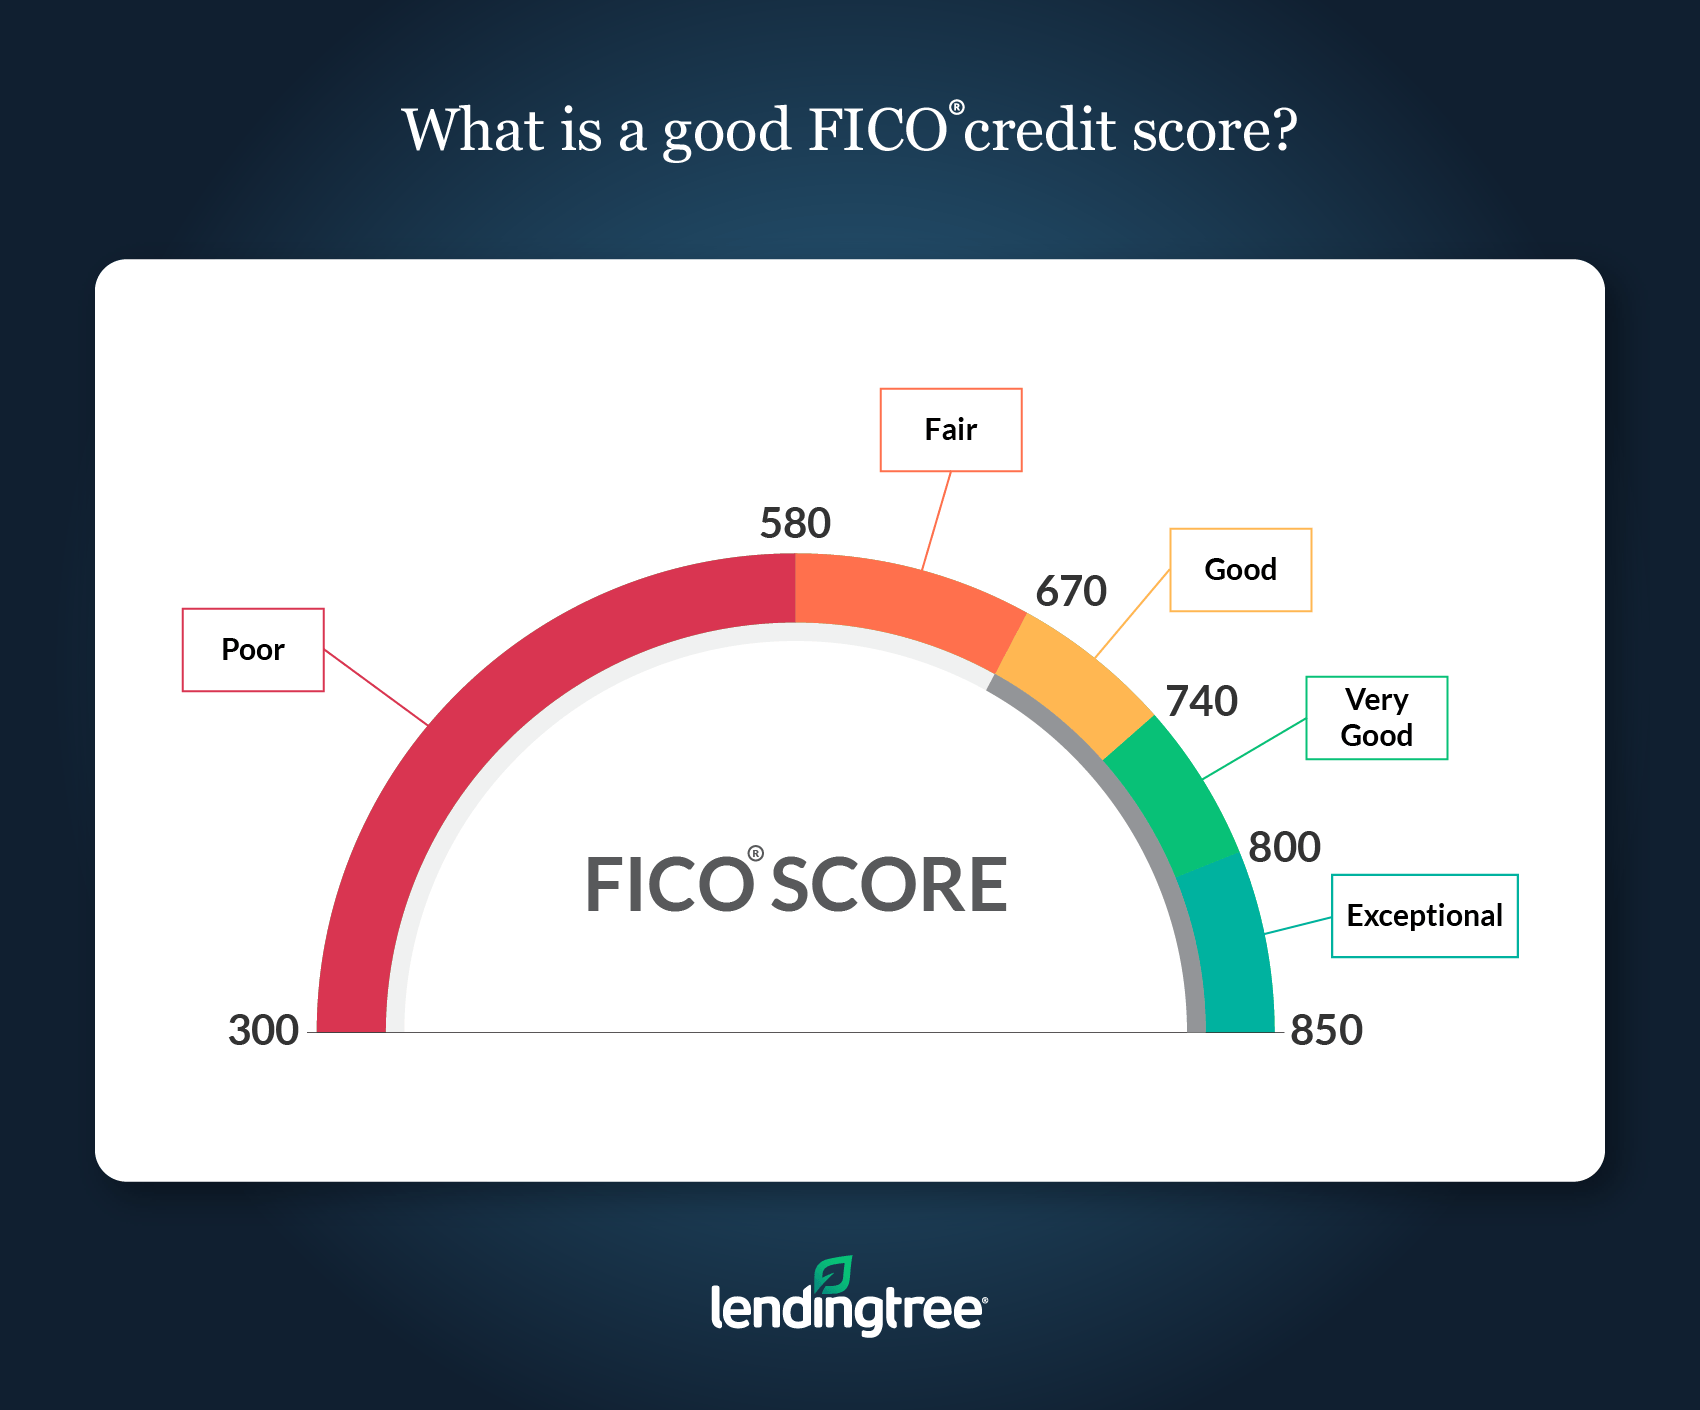 FICO Score vs Credit Score